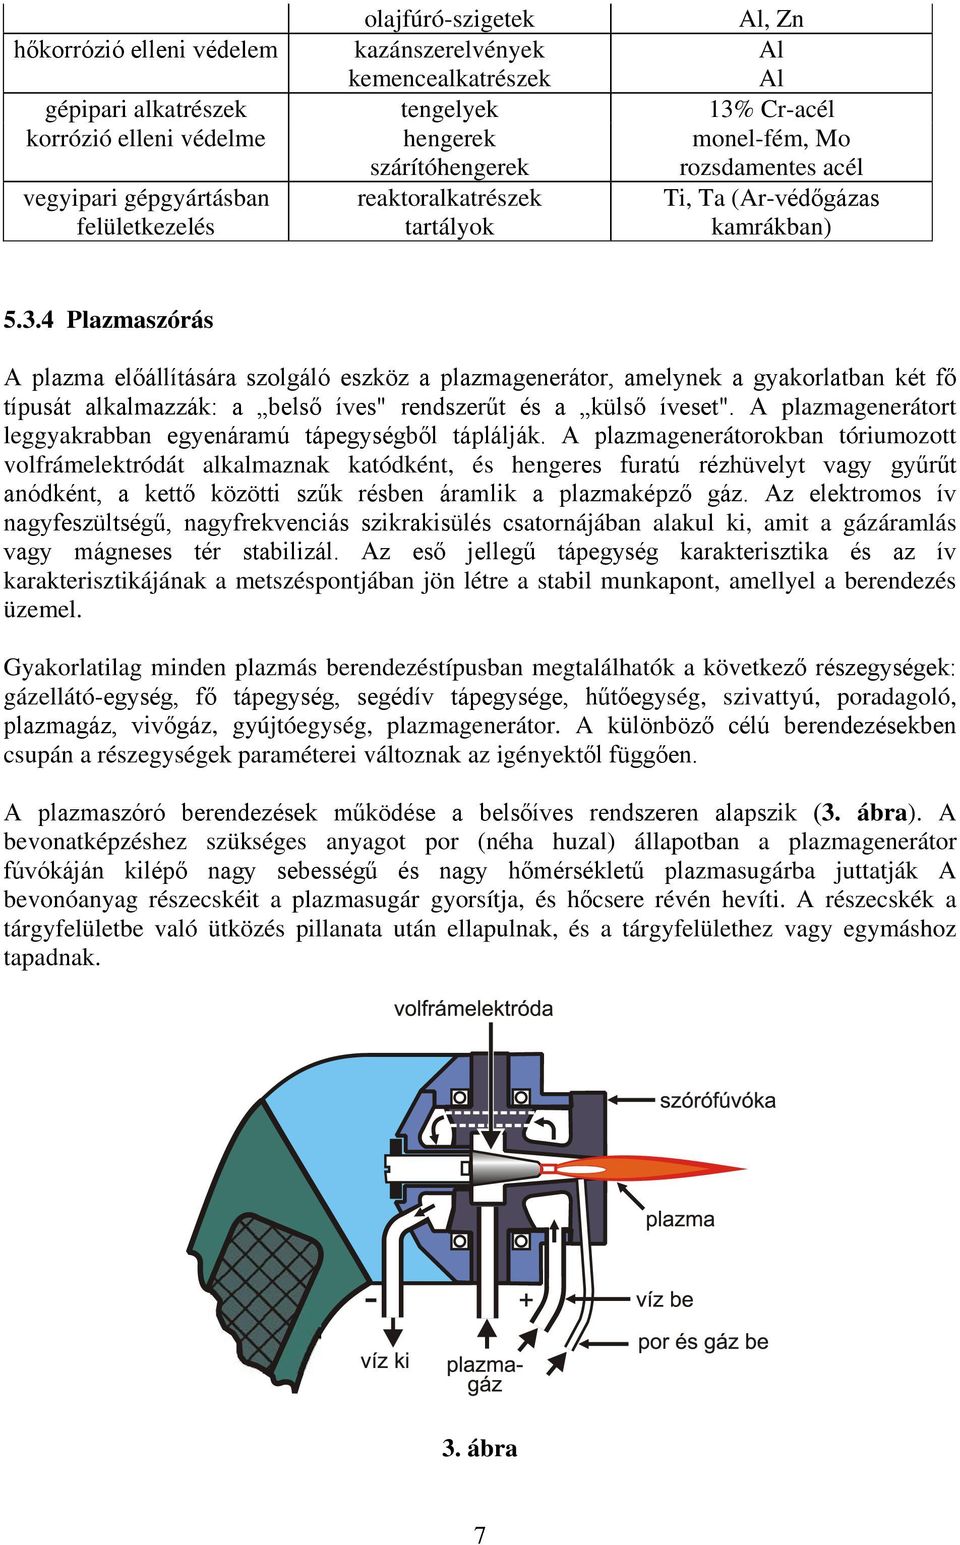 4 Plazmaszórás A plazma előállítására szolgáló eszköz a plazmagenerátor, amelynek a gyakorlatban két fő típusát alkalmazzák: a belső íves" rendszerűt és a külső íveset".